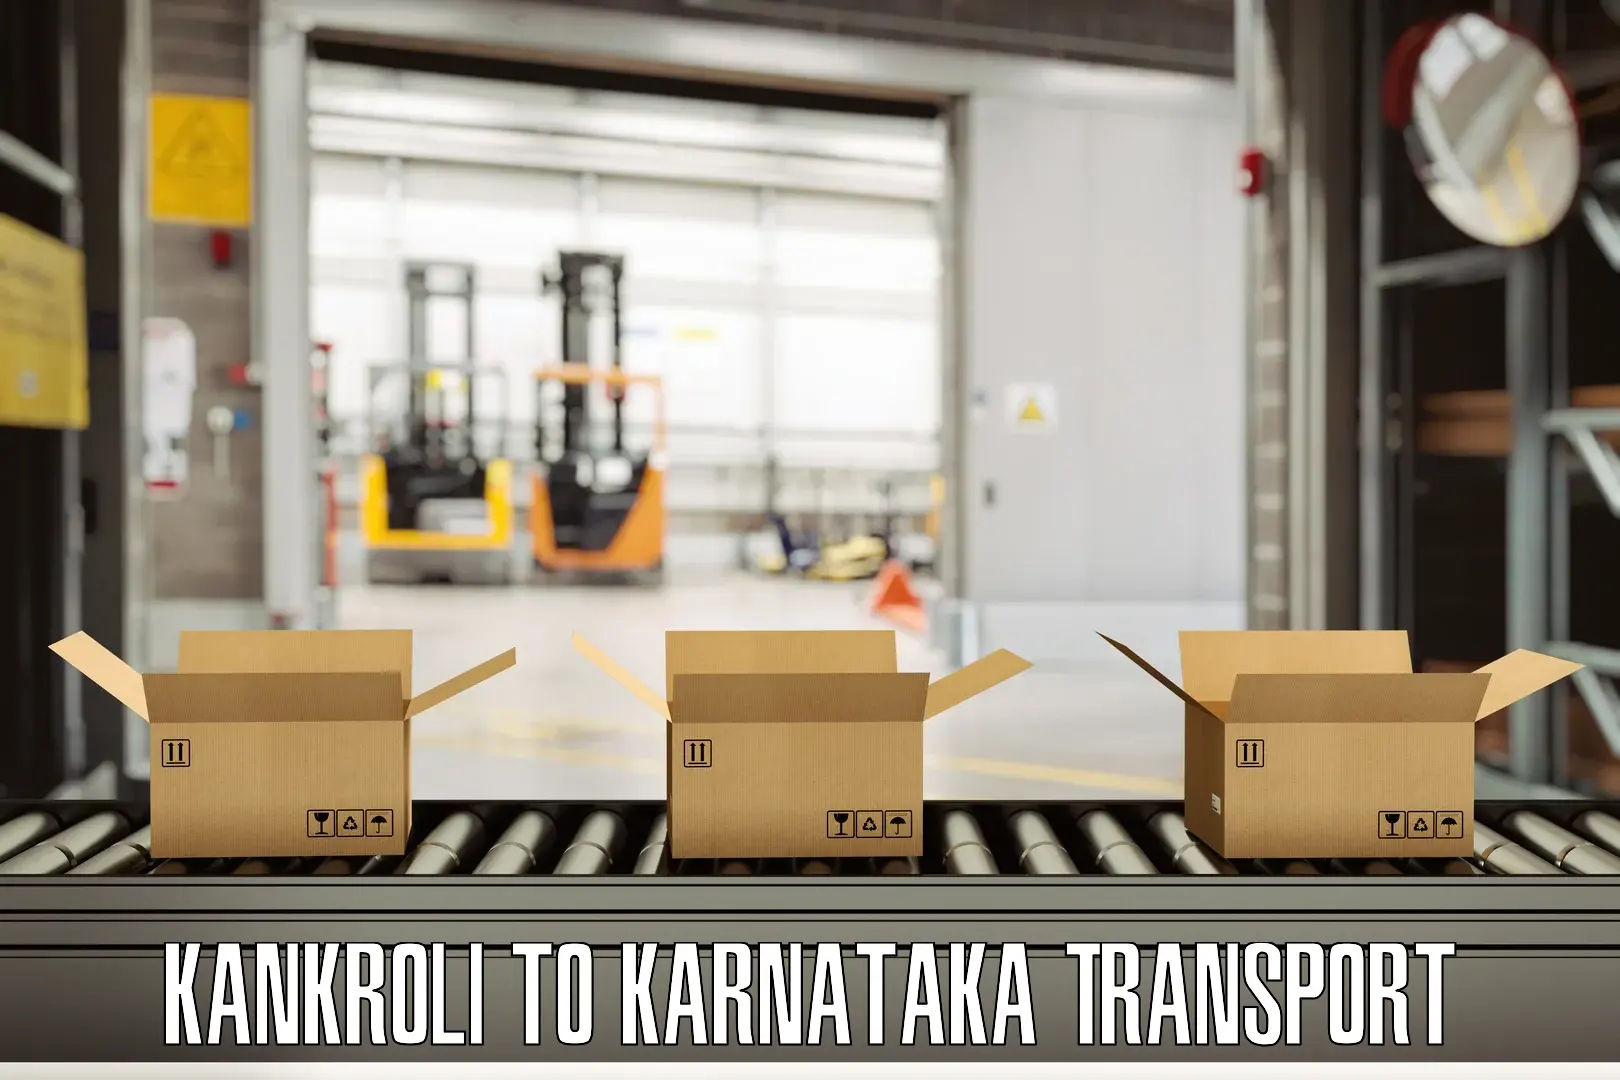 Transport in sharing Kankroli to Kolar